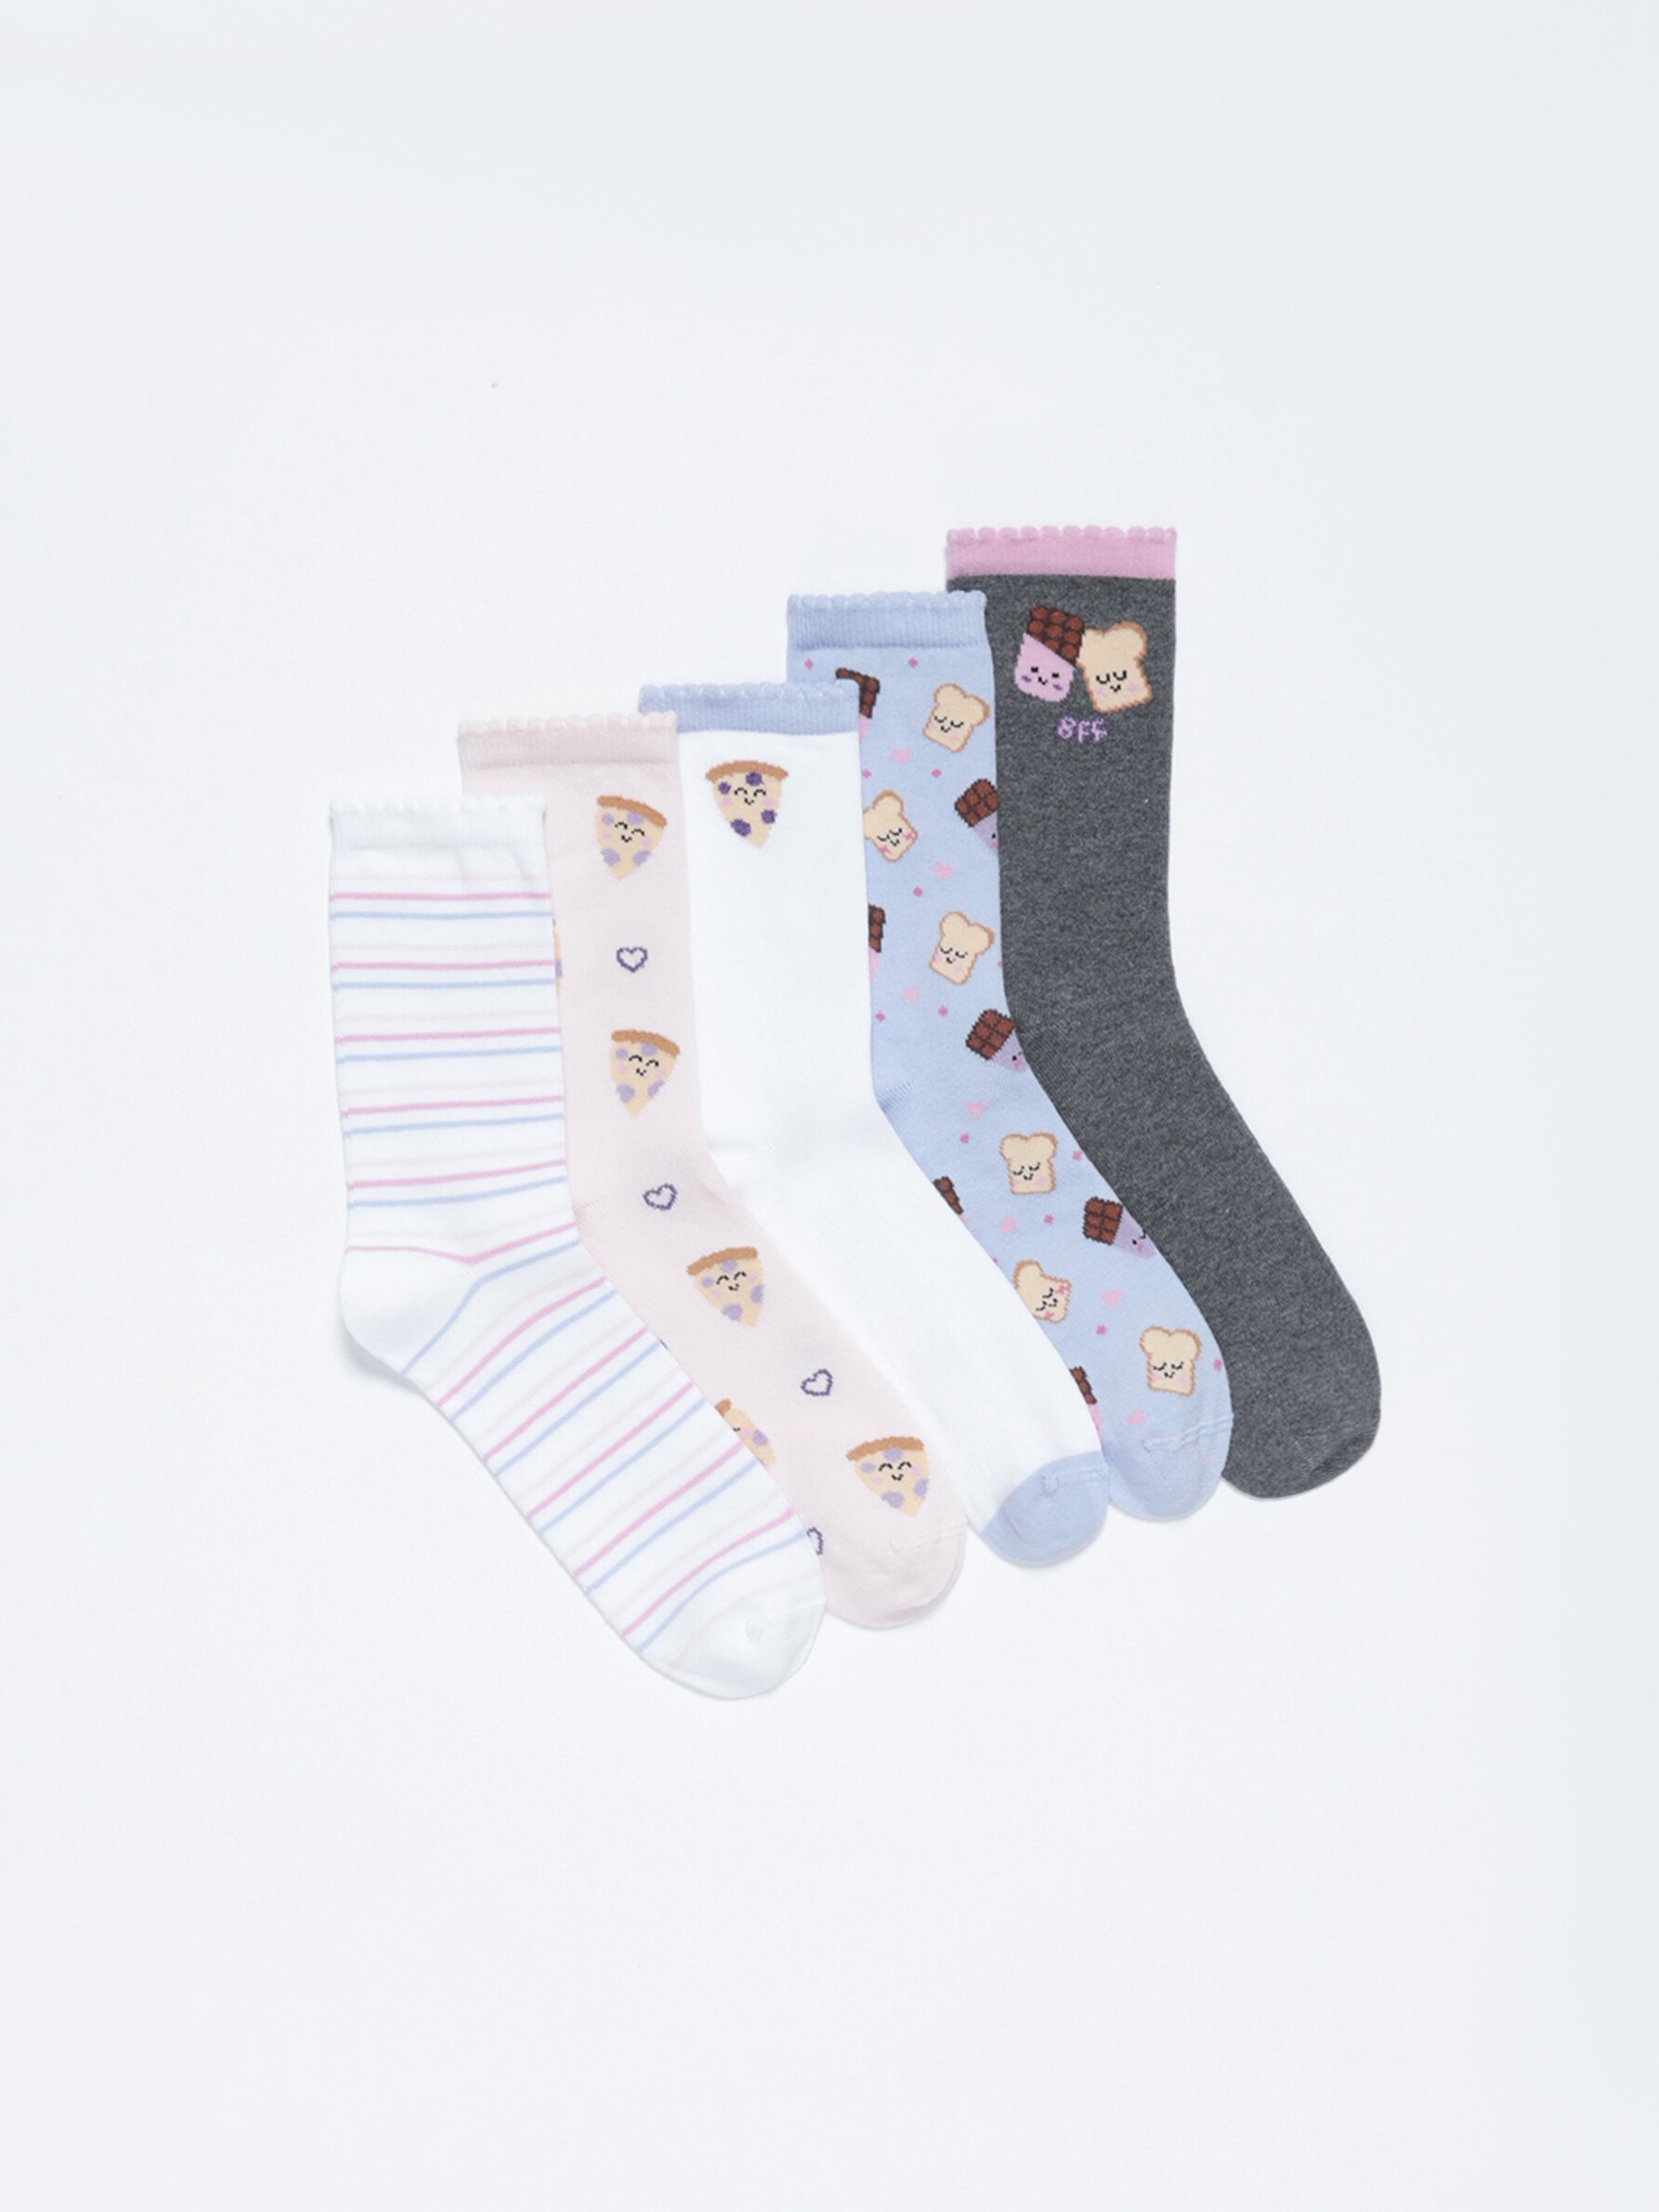 Pack of 5 pairs of food socks - Socks - Underwear - CLOTHING - Girl - Kids  